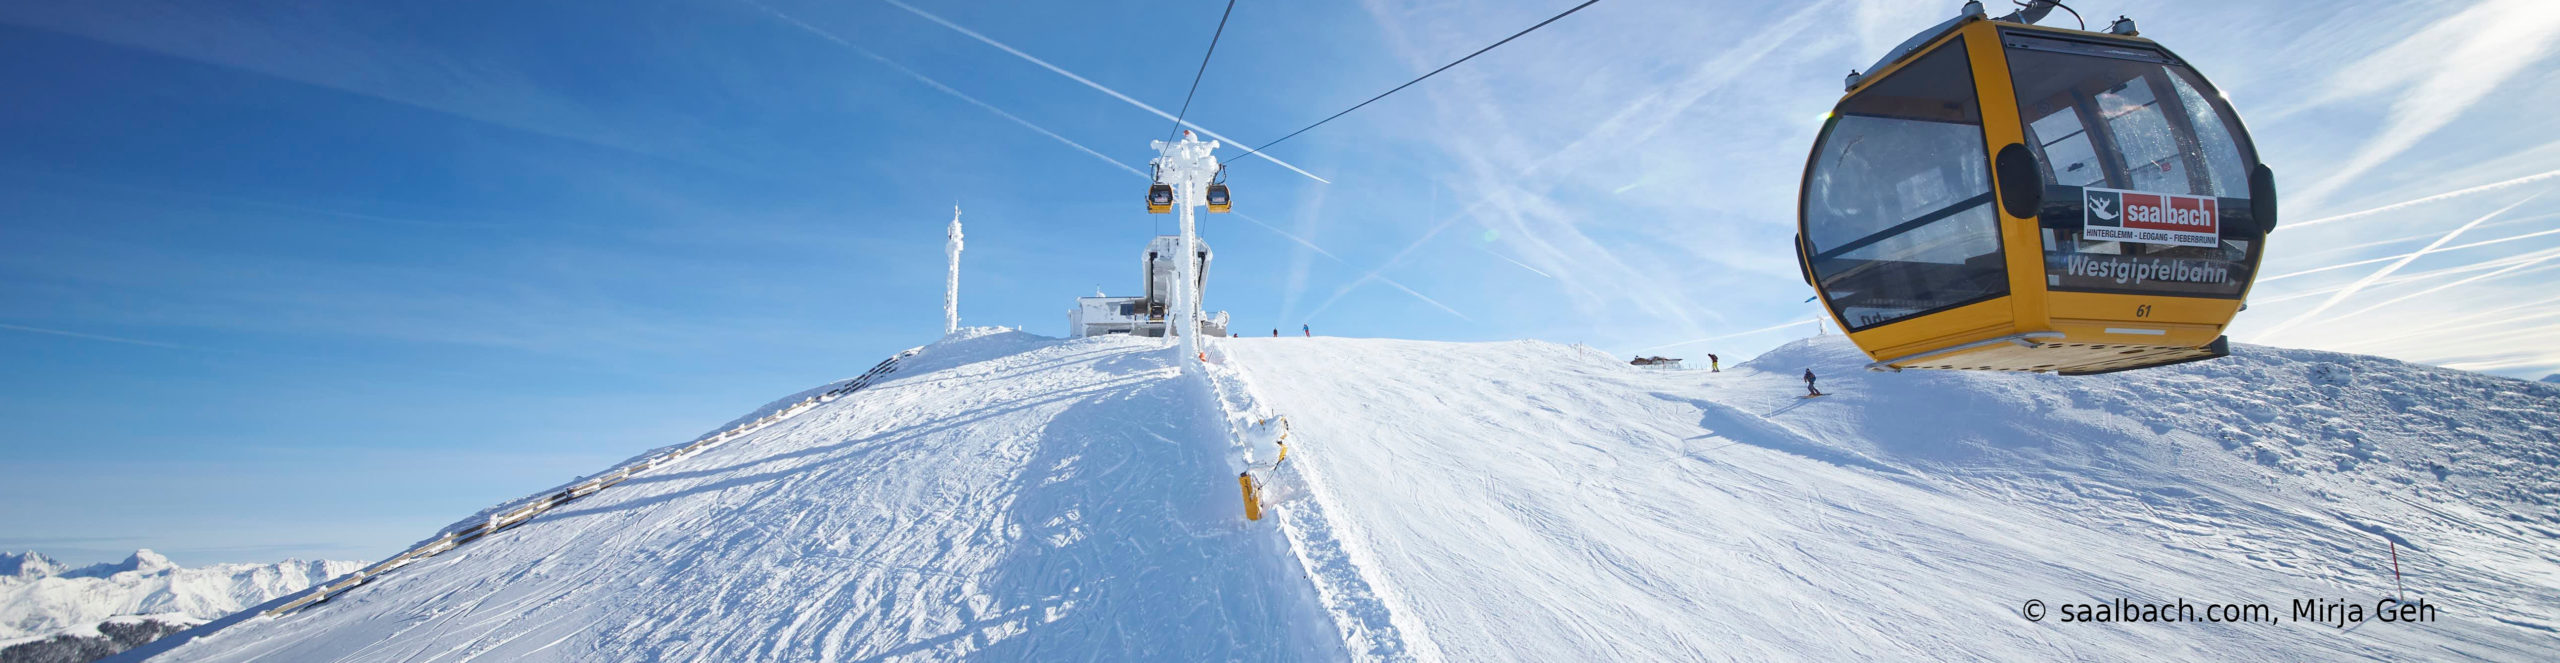 SAALBACH HINTERGLEMM – Skiwochenende nur Schritte vom Lift mit 3 vollen Skitagen 